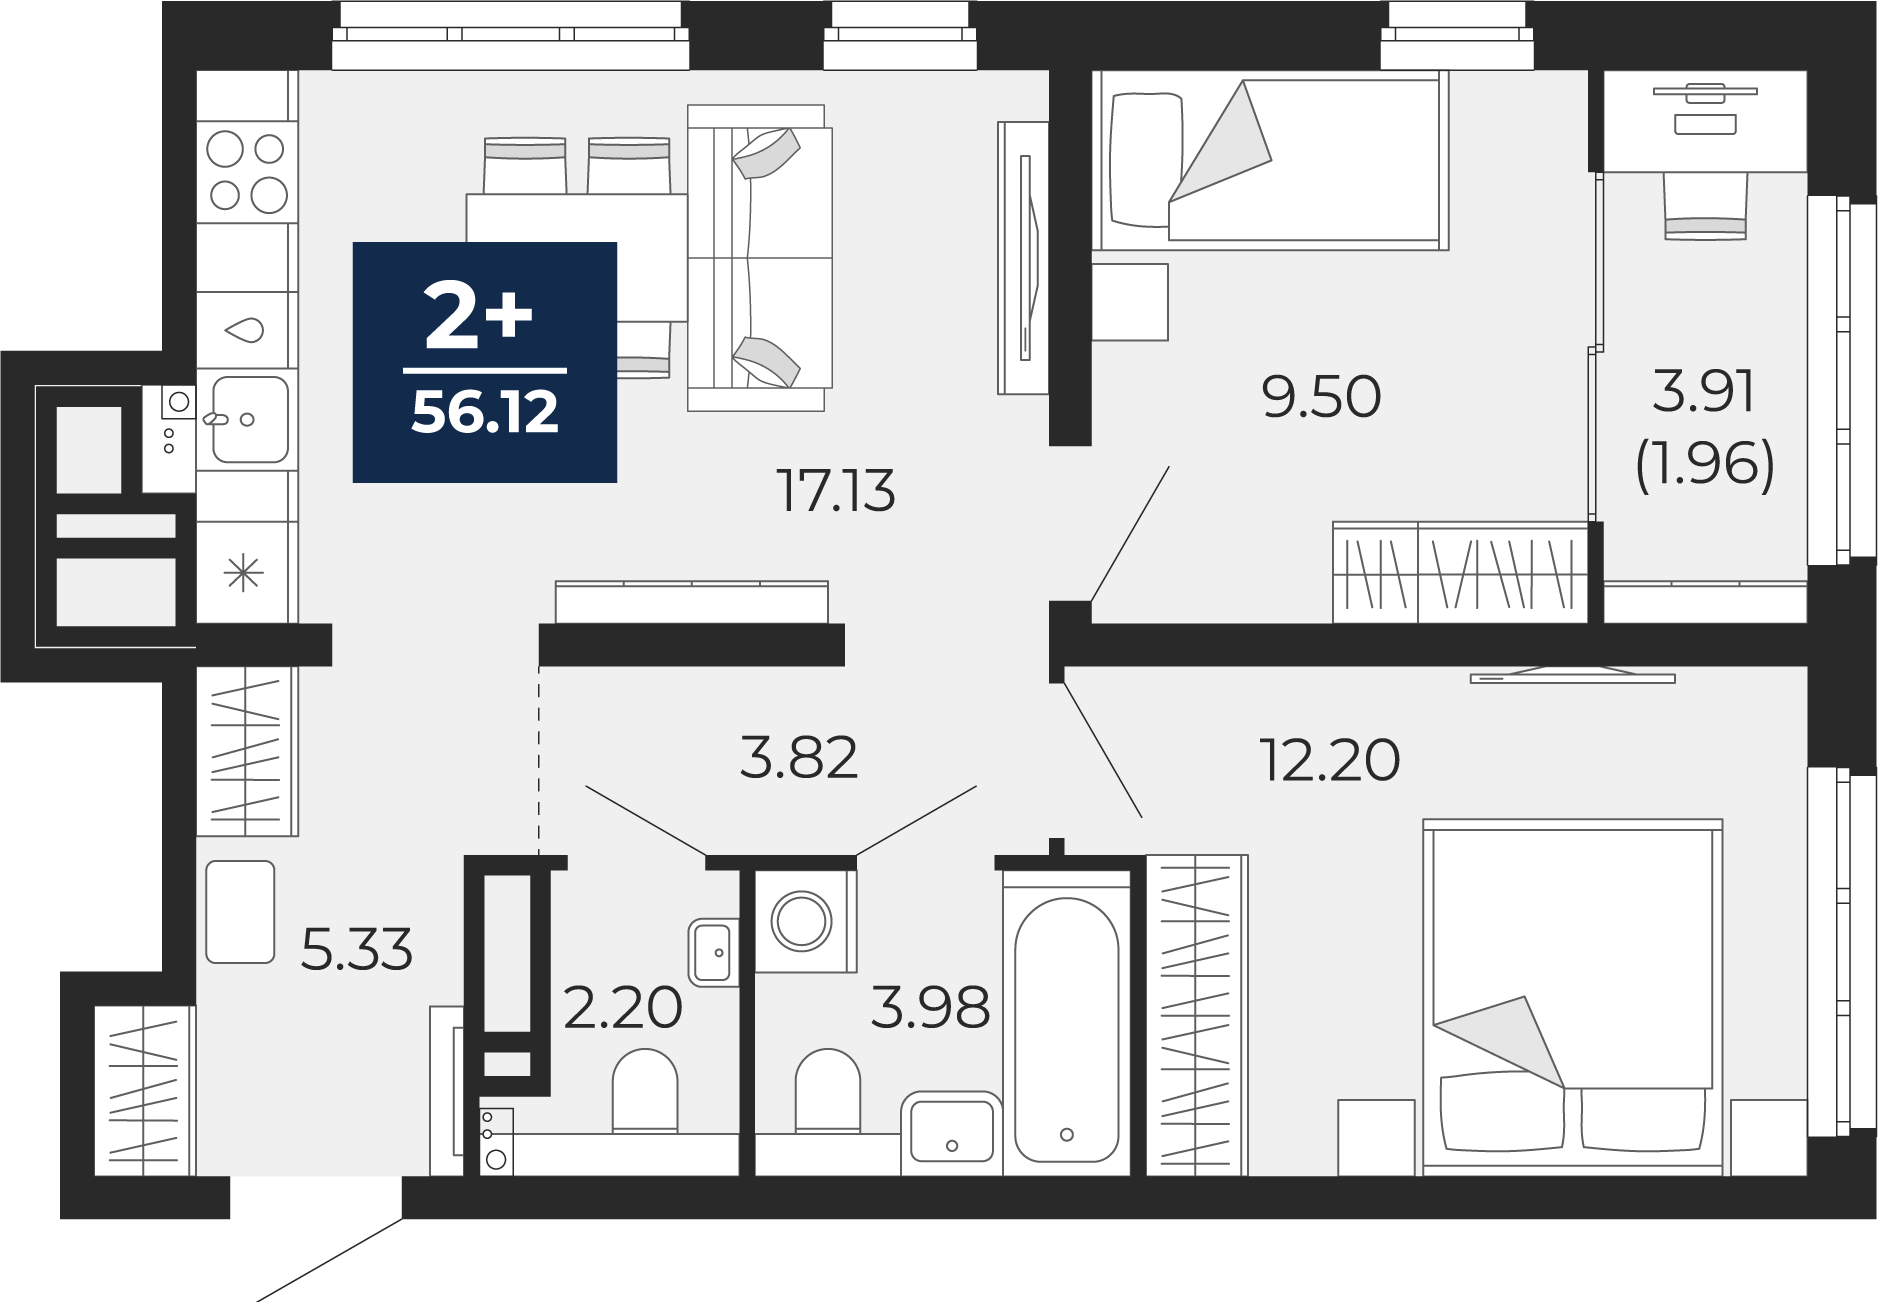 Квартира № 203, 2-комнатная, 56.12 кв. м, 21 этаж